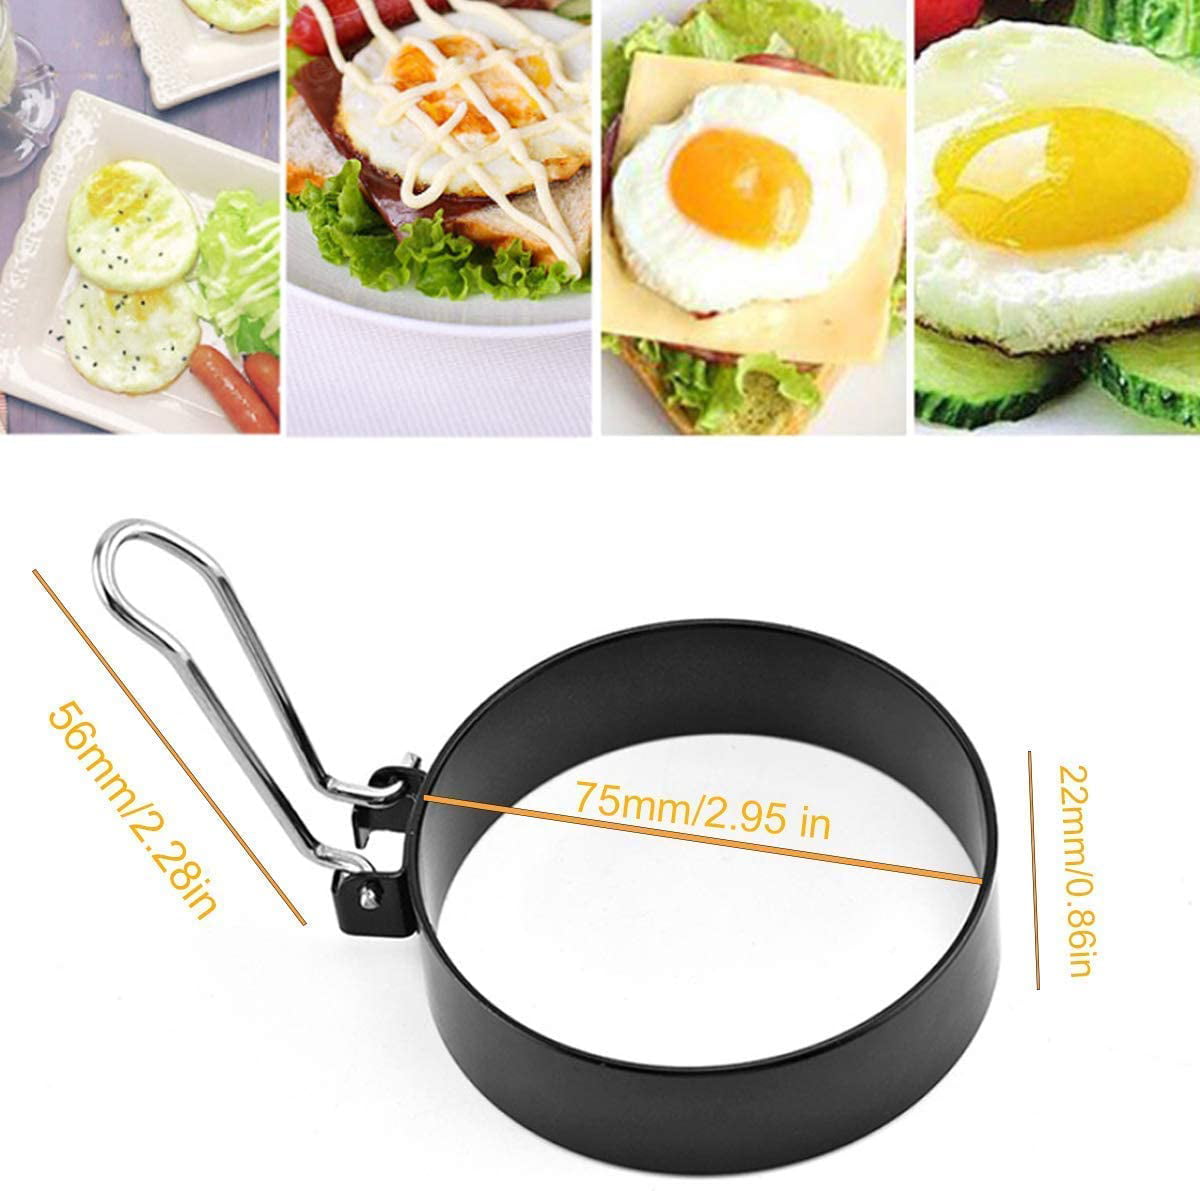 Egg Ring, 3 Pack Egg Pancake Maker Mold, Stainless Steel Non